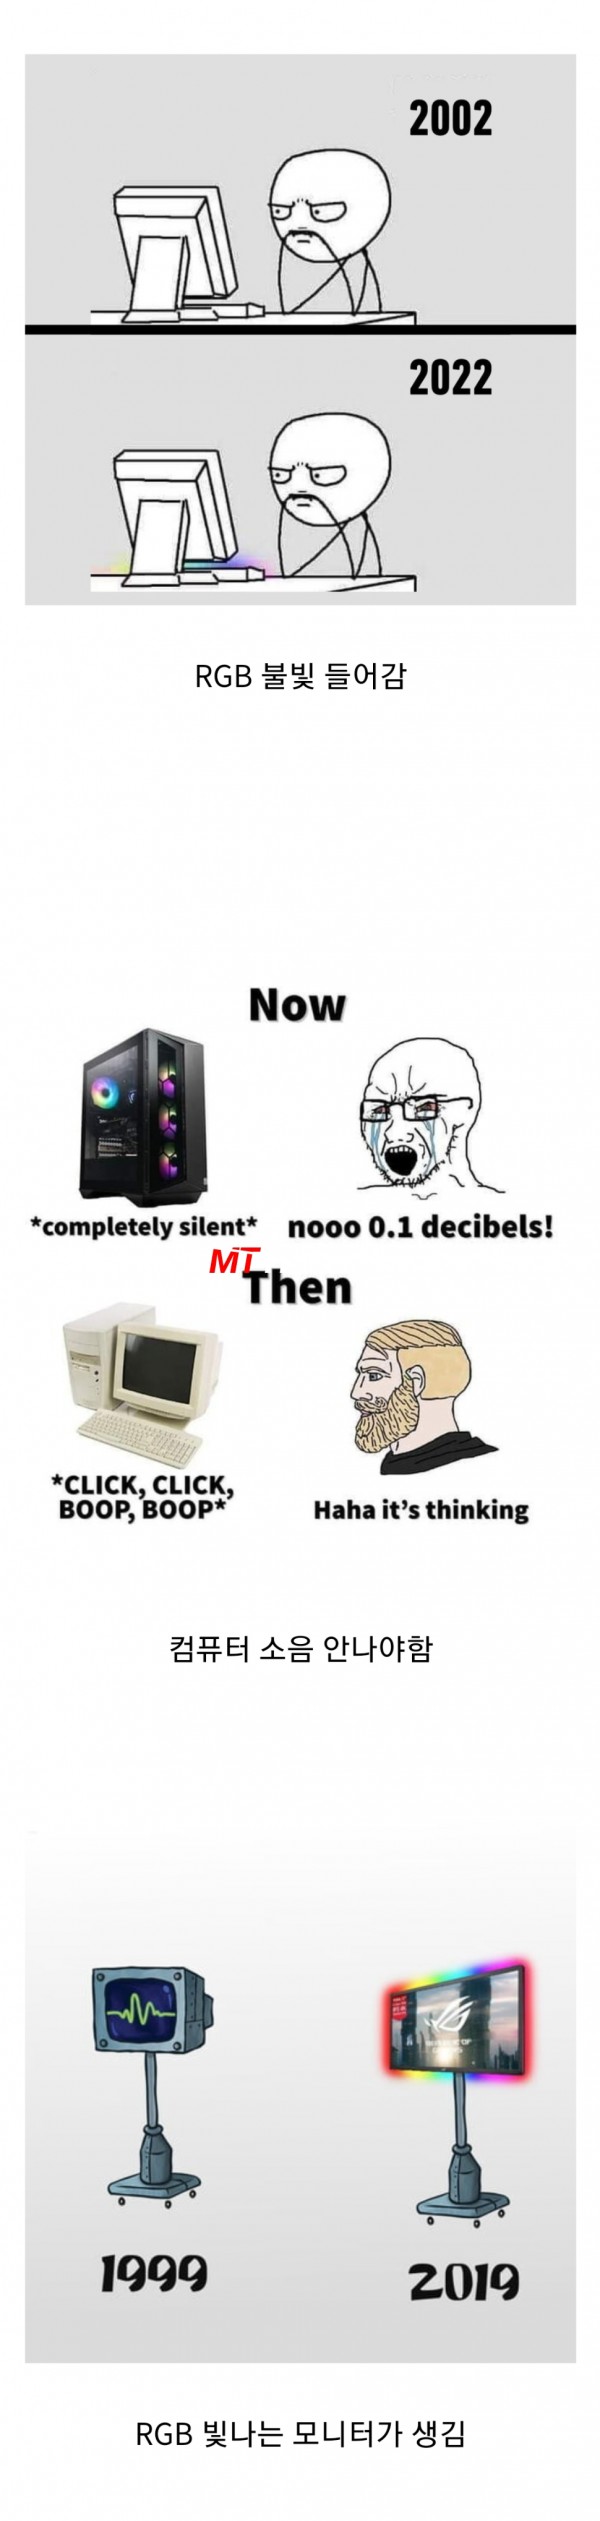 컴퓨터 기술 발전